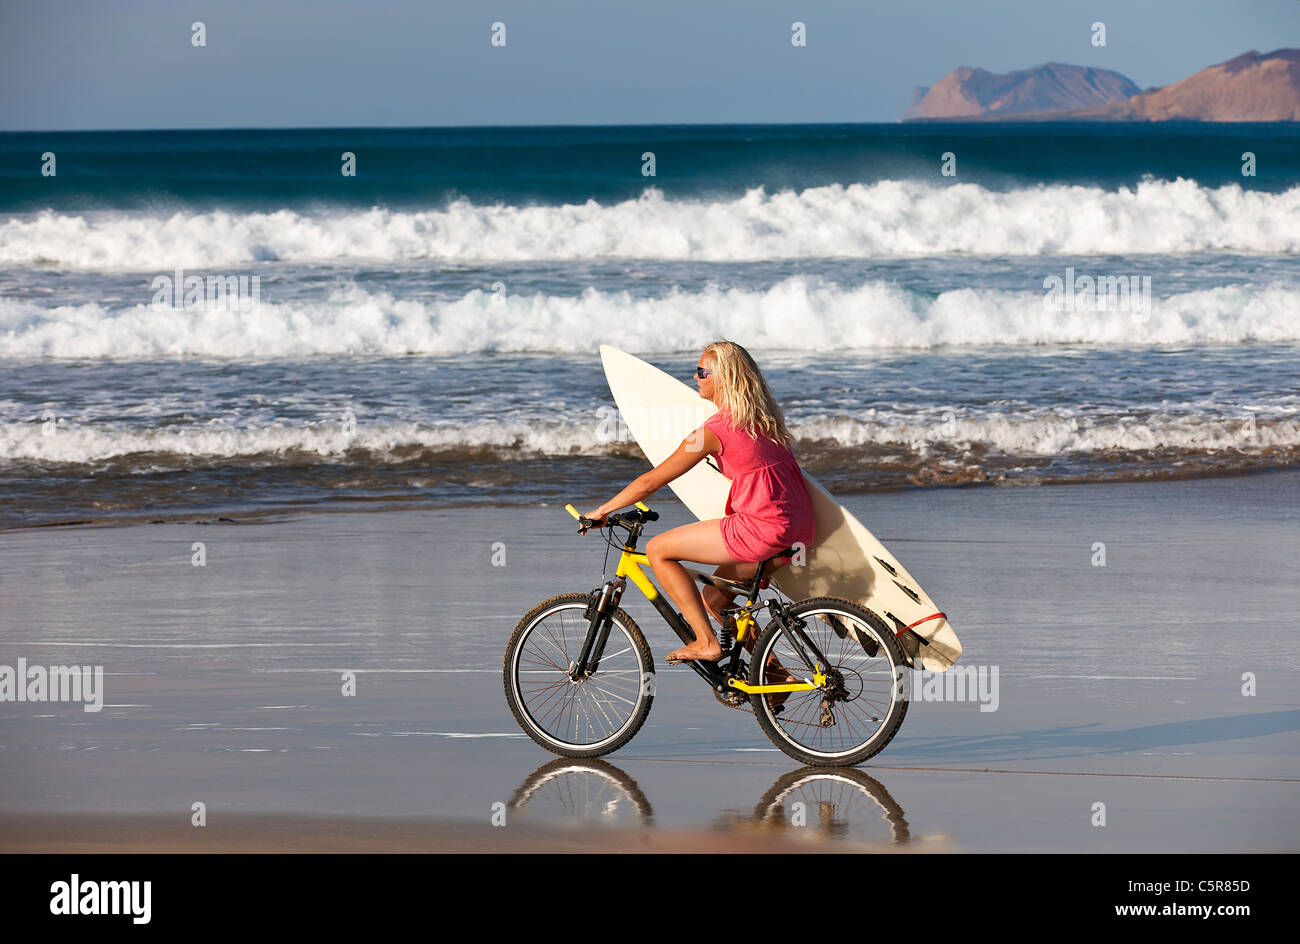 Surfer girl cabalga las olas del mar en bicicleta de montaña. Foto de stock